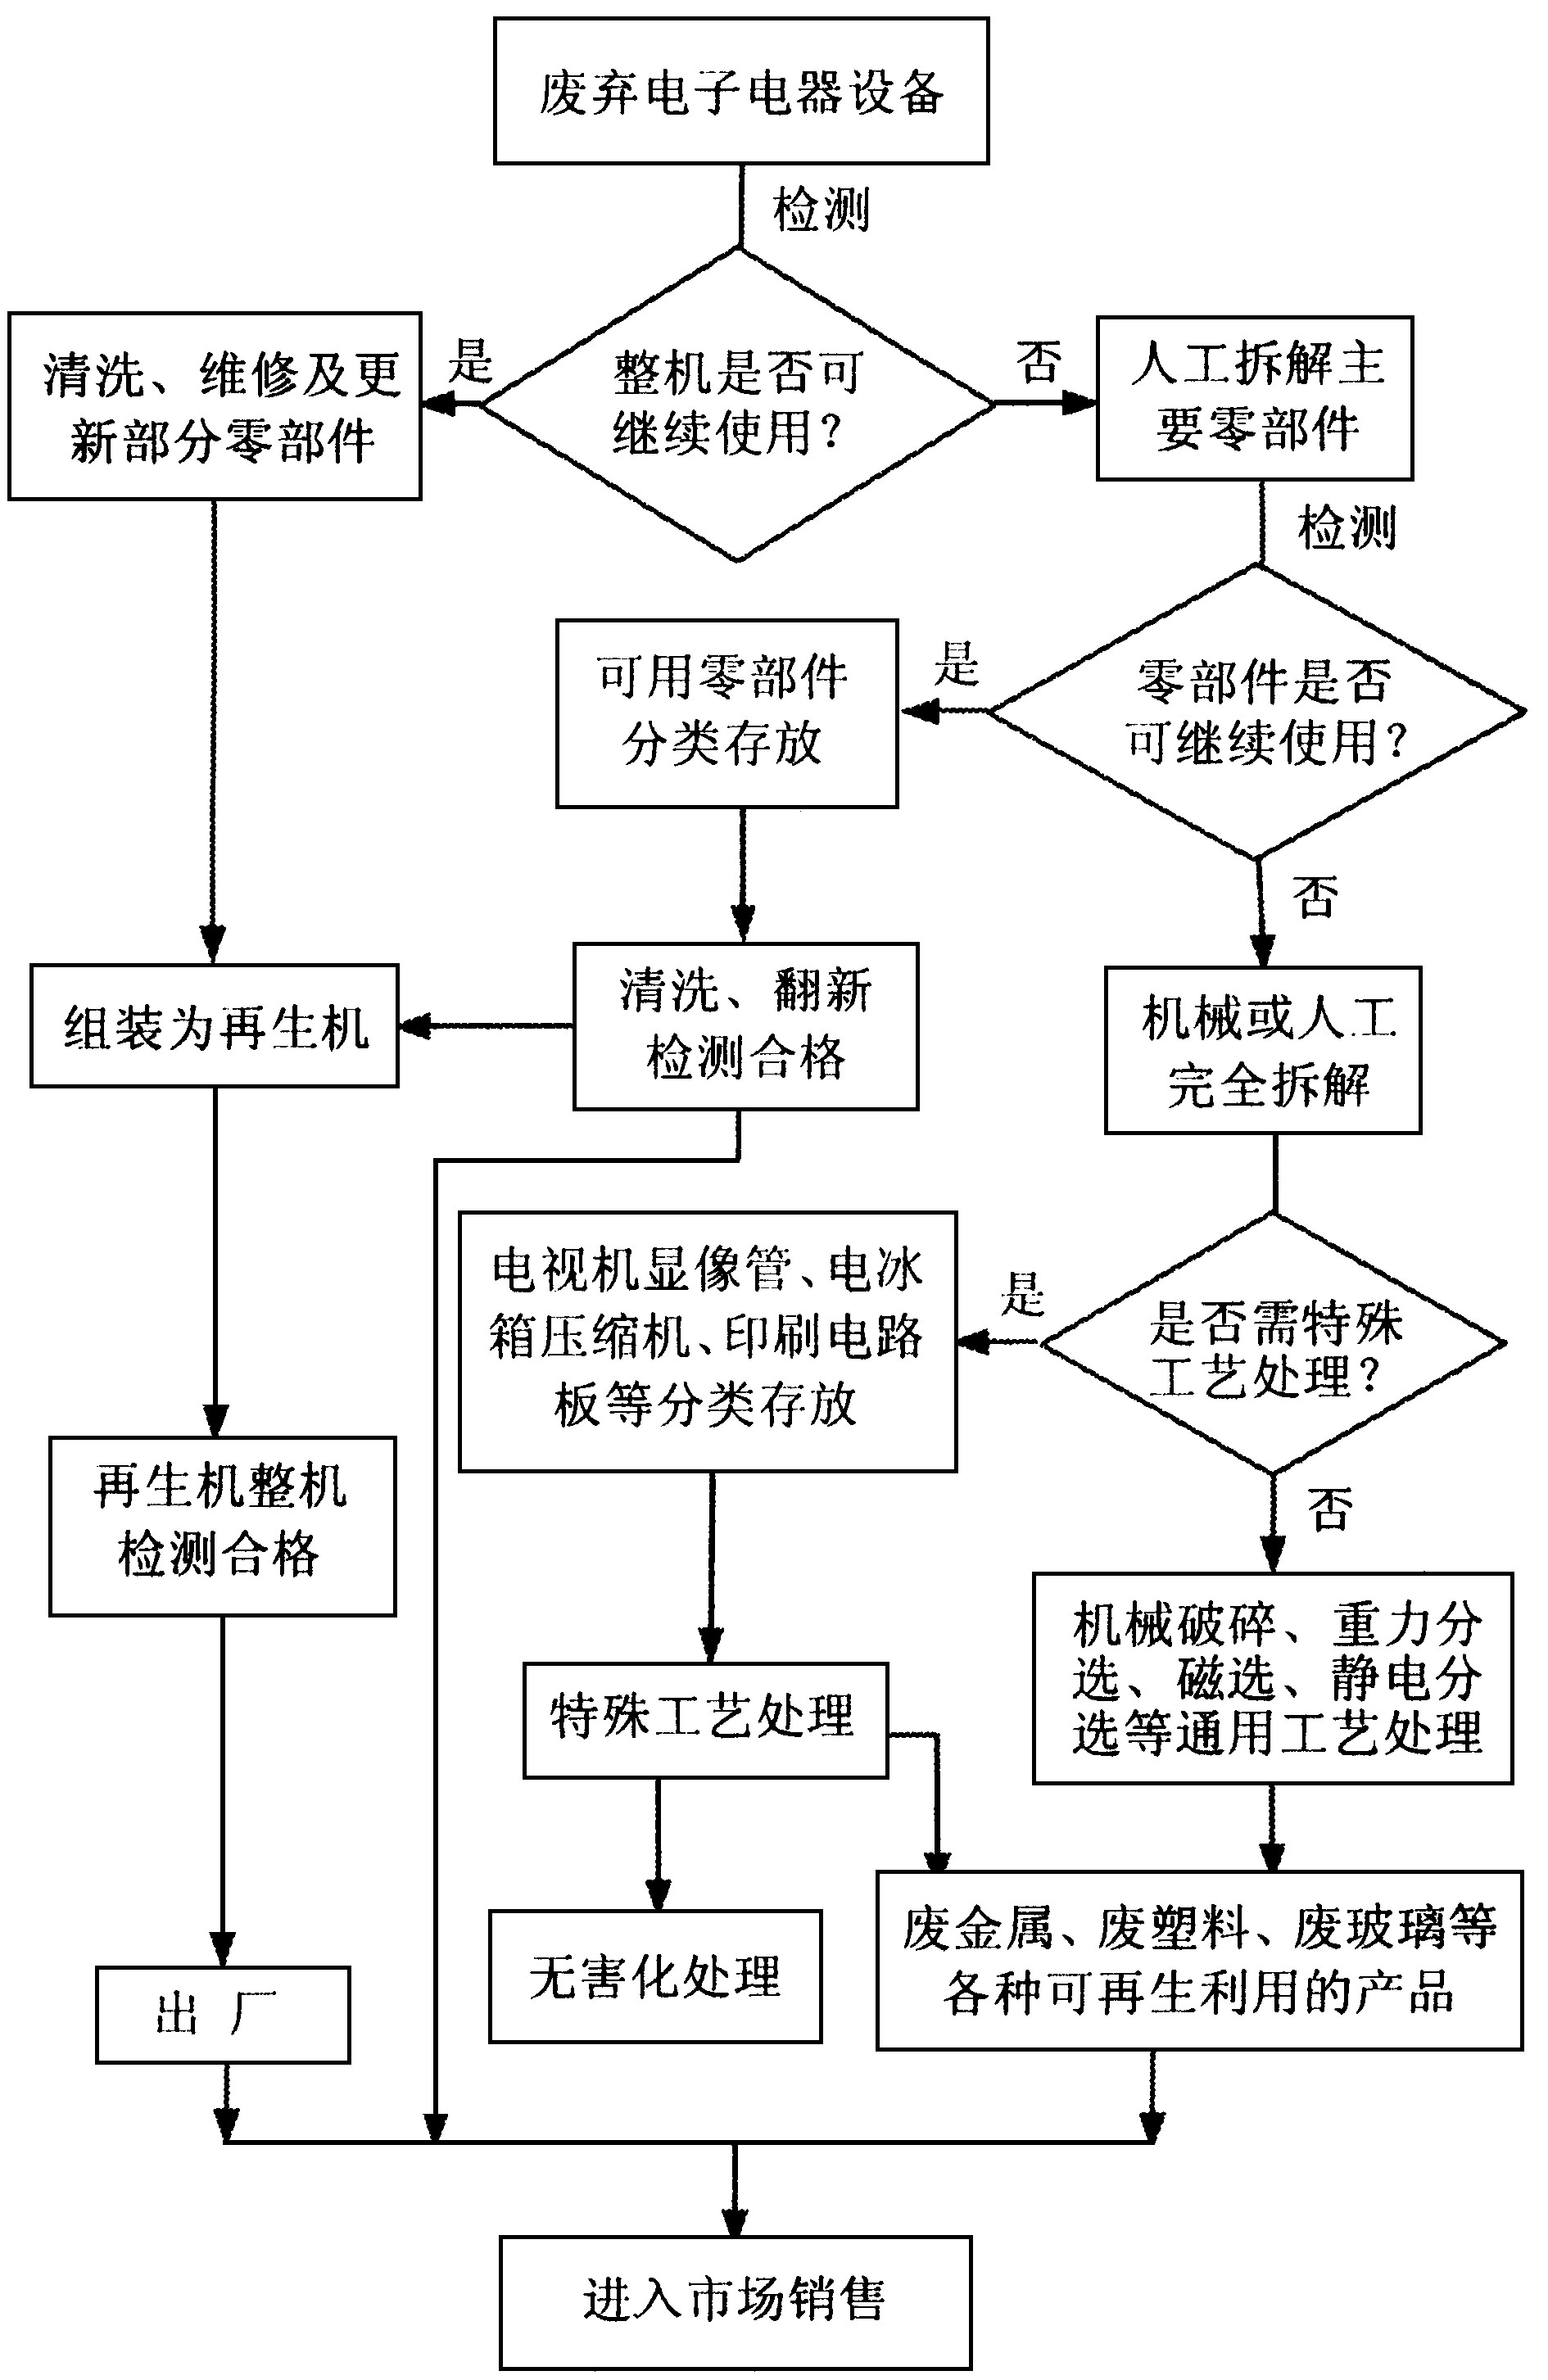 图1 我国电子废弃物处理处置的工艺流程图
Fig.1 Proposed process flowchart for the WEEE
 recycling in China